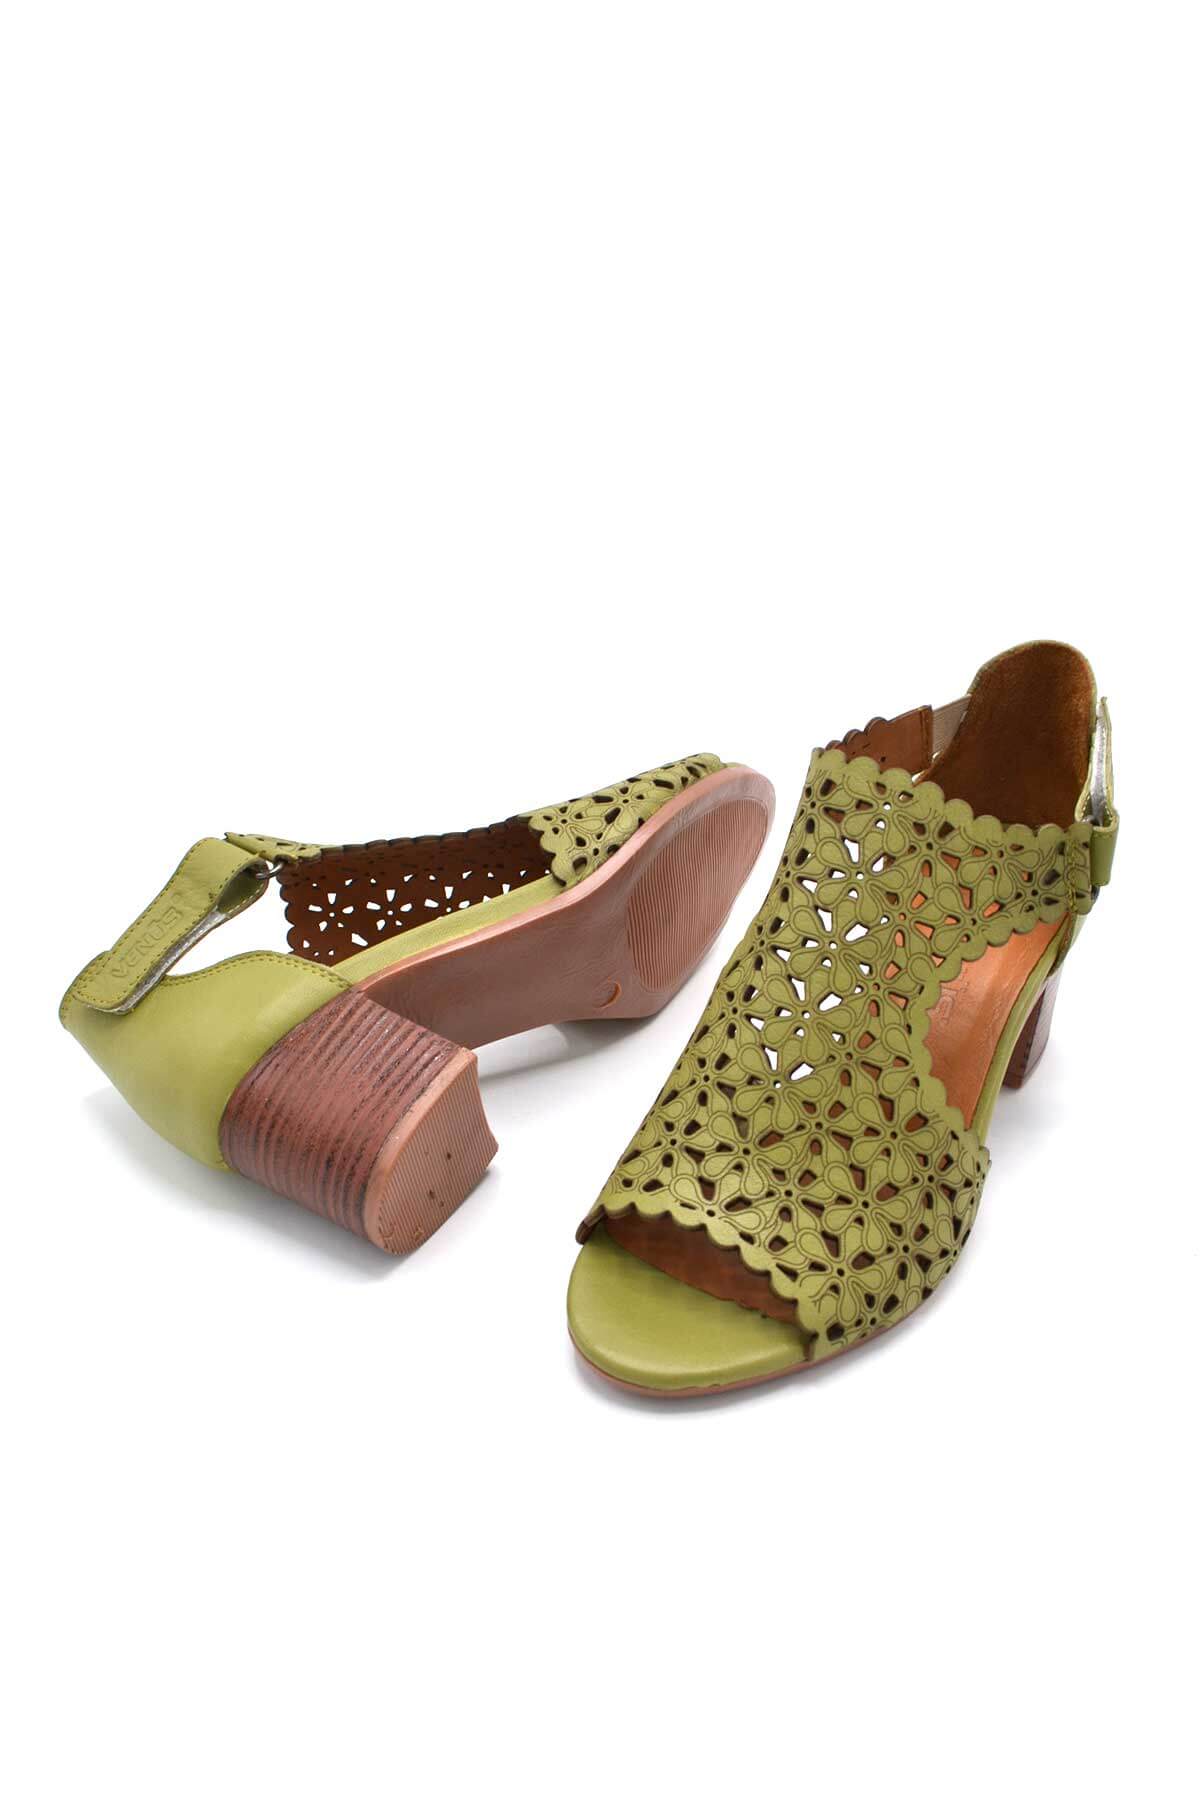 Kadın Topuklu Deri Sandalet Yeşil 1857215Y - Thumbnail